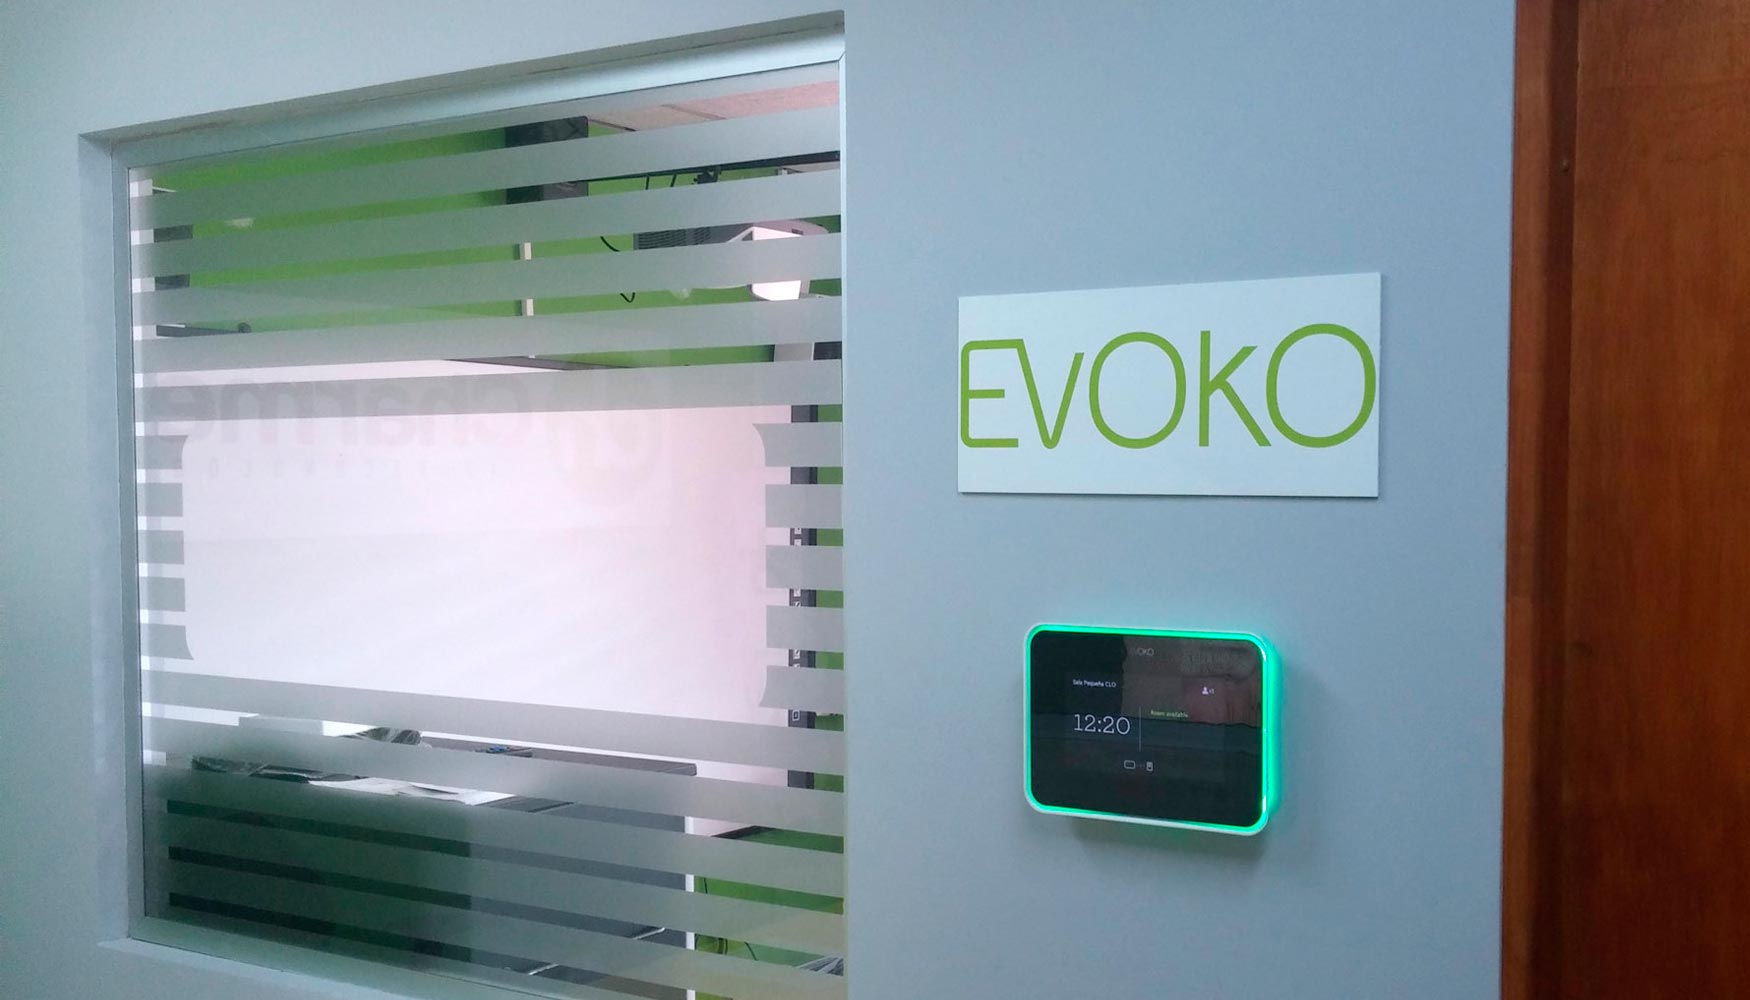 Los sistemas de reserva de salas de Evoko tambin se exhiben en el showroom